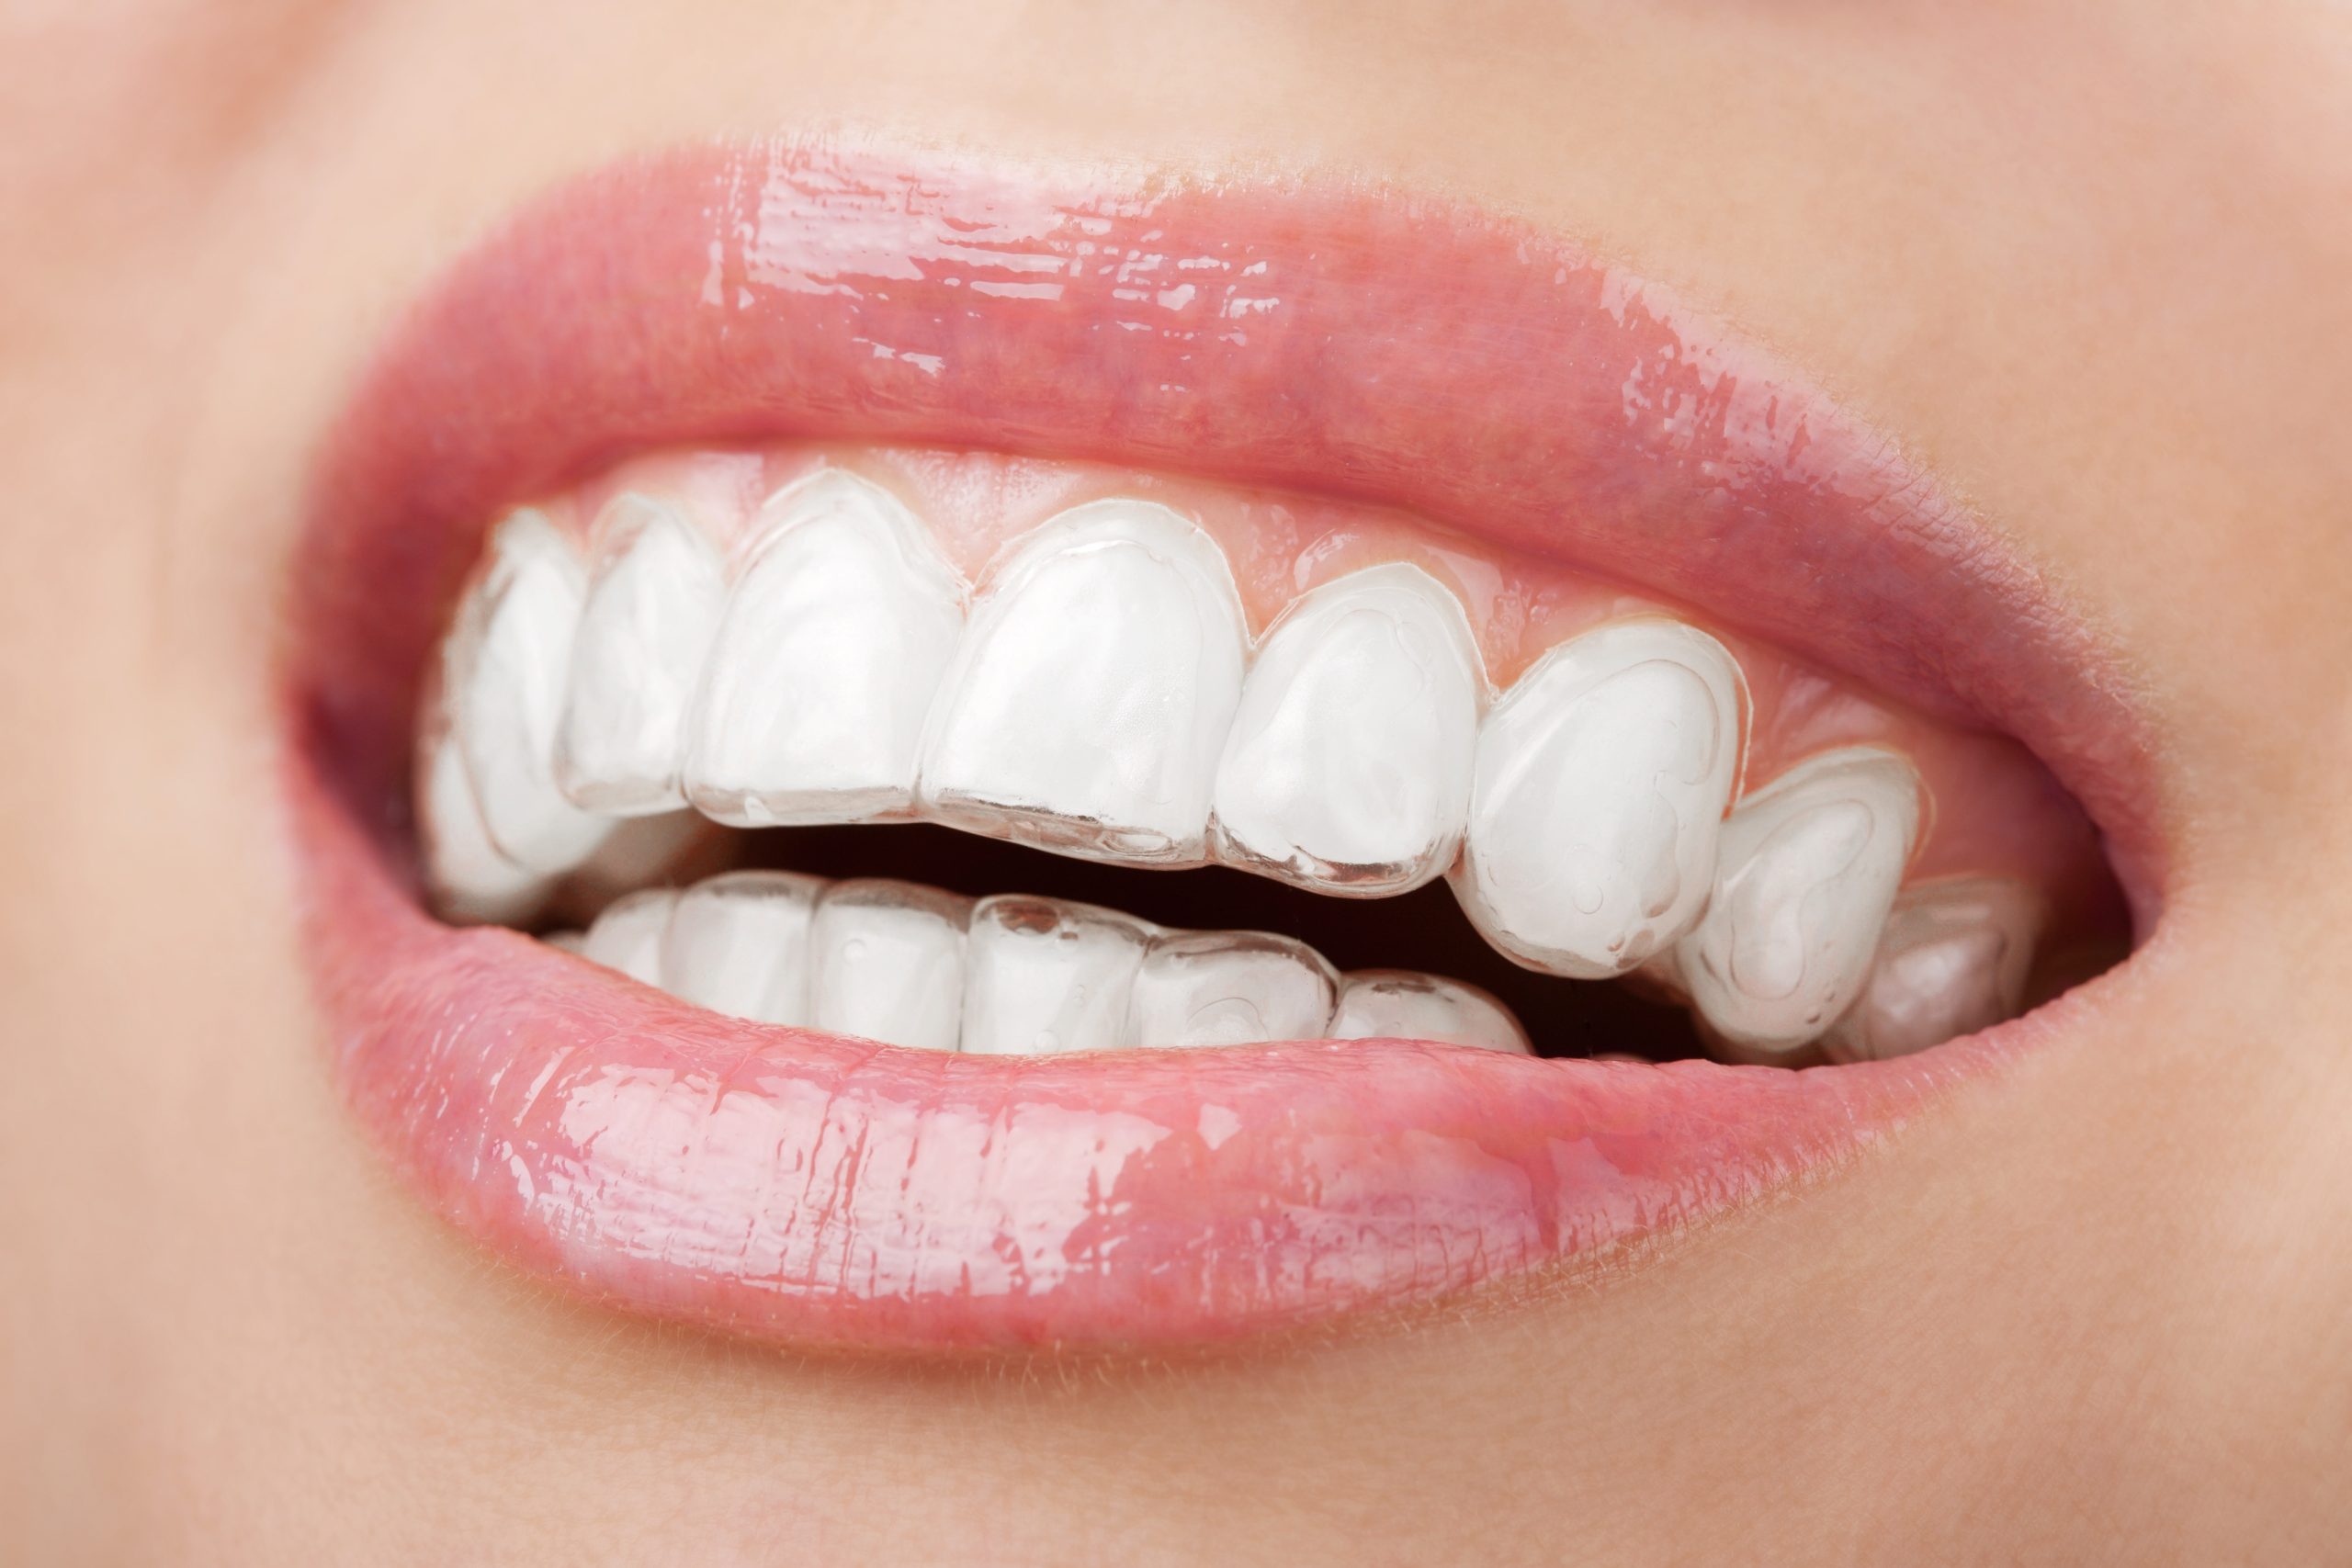 láthatatlan fogszabályotó gaspar dental